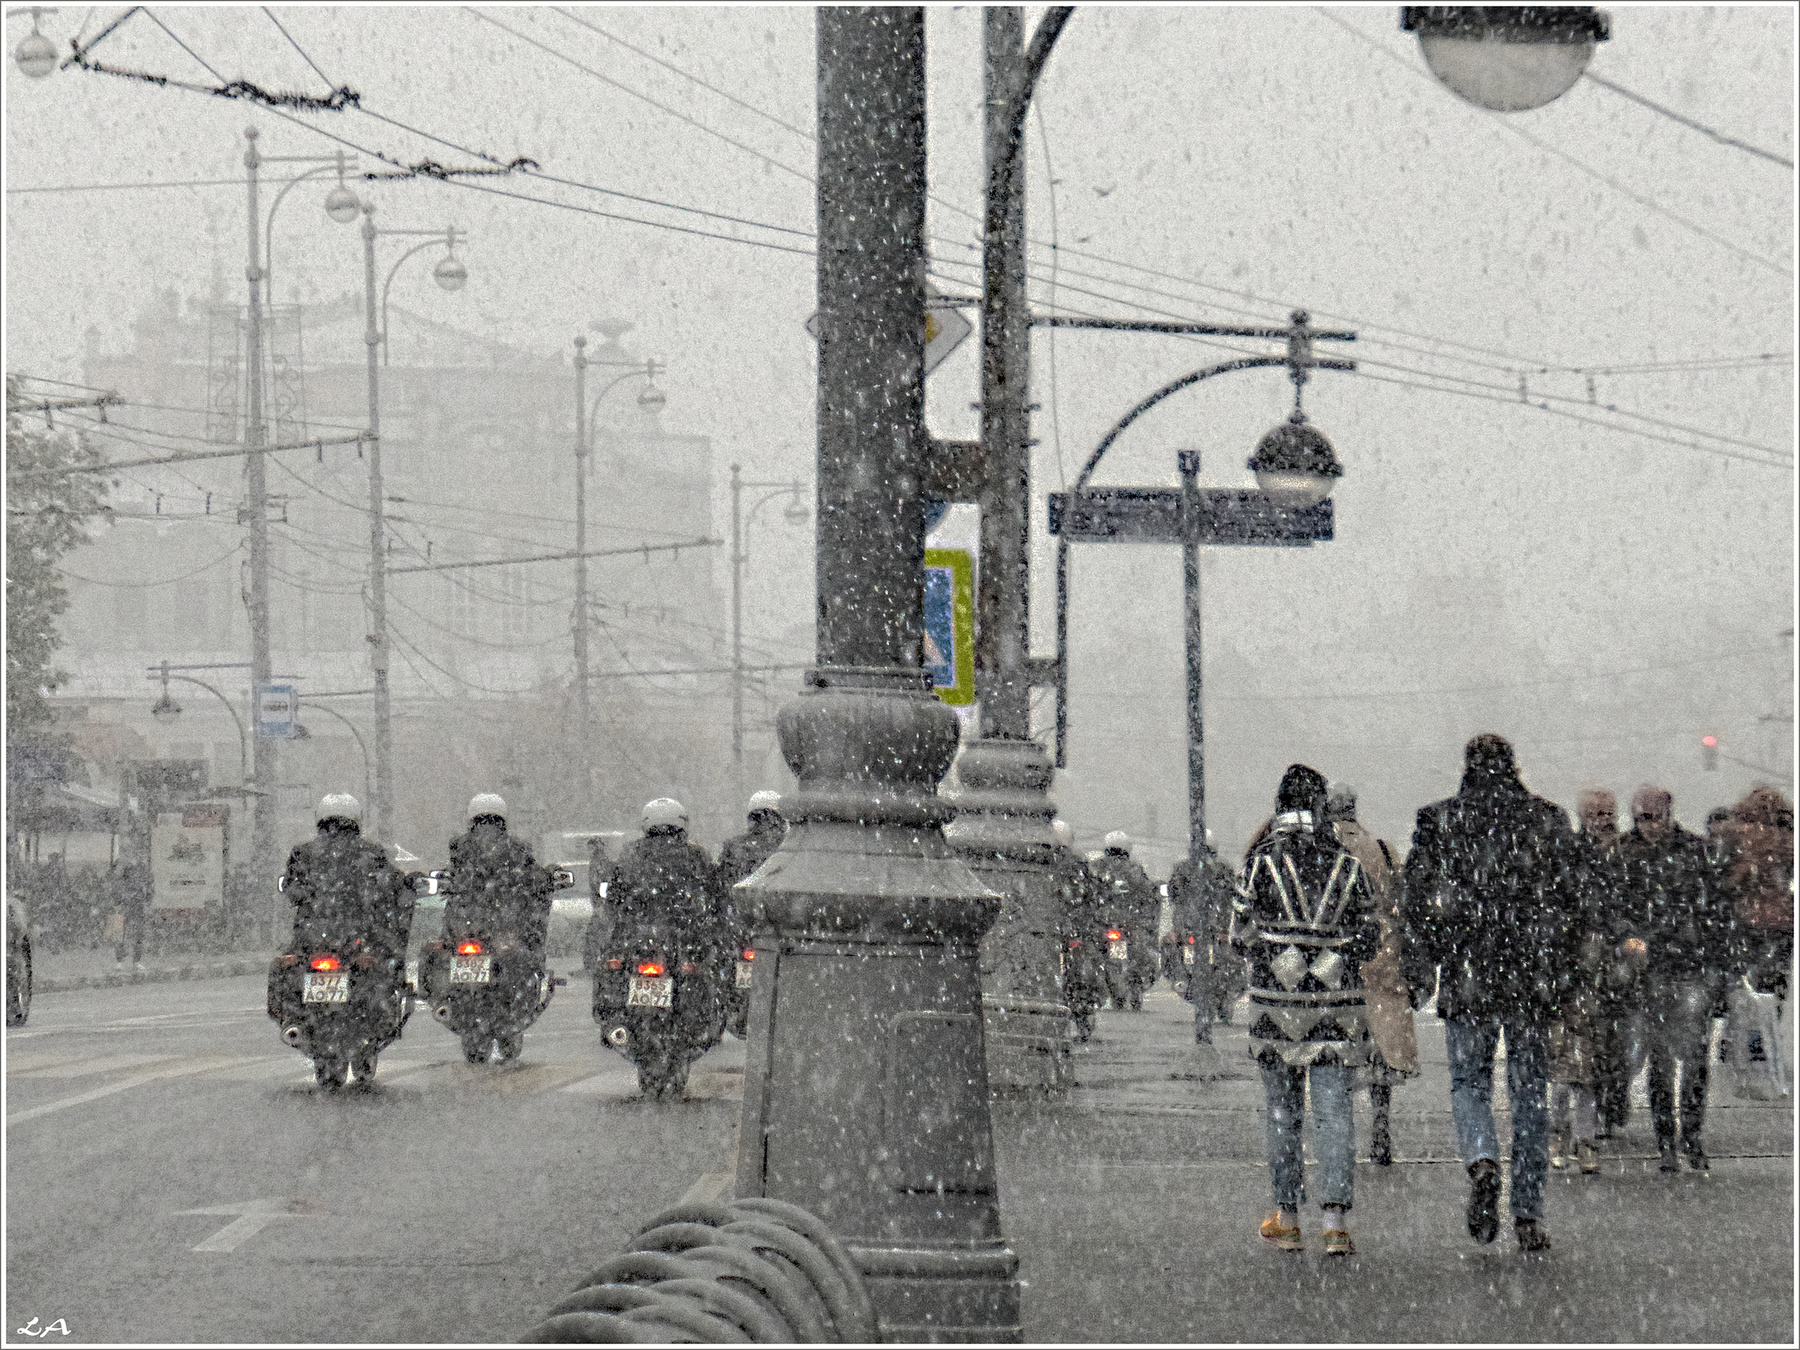 *Осенний снегопад в столице* путешествия осень снегопад Москва улица Фото.Сайт Светлана Мамакина Lihgra Adventure